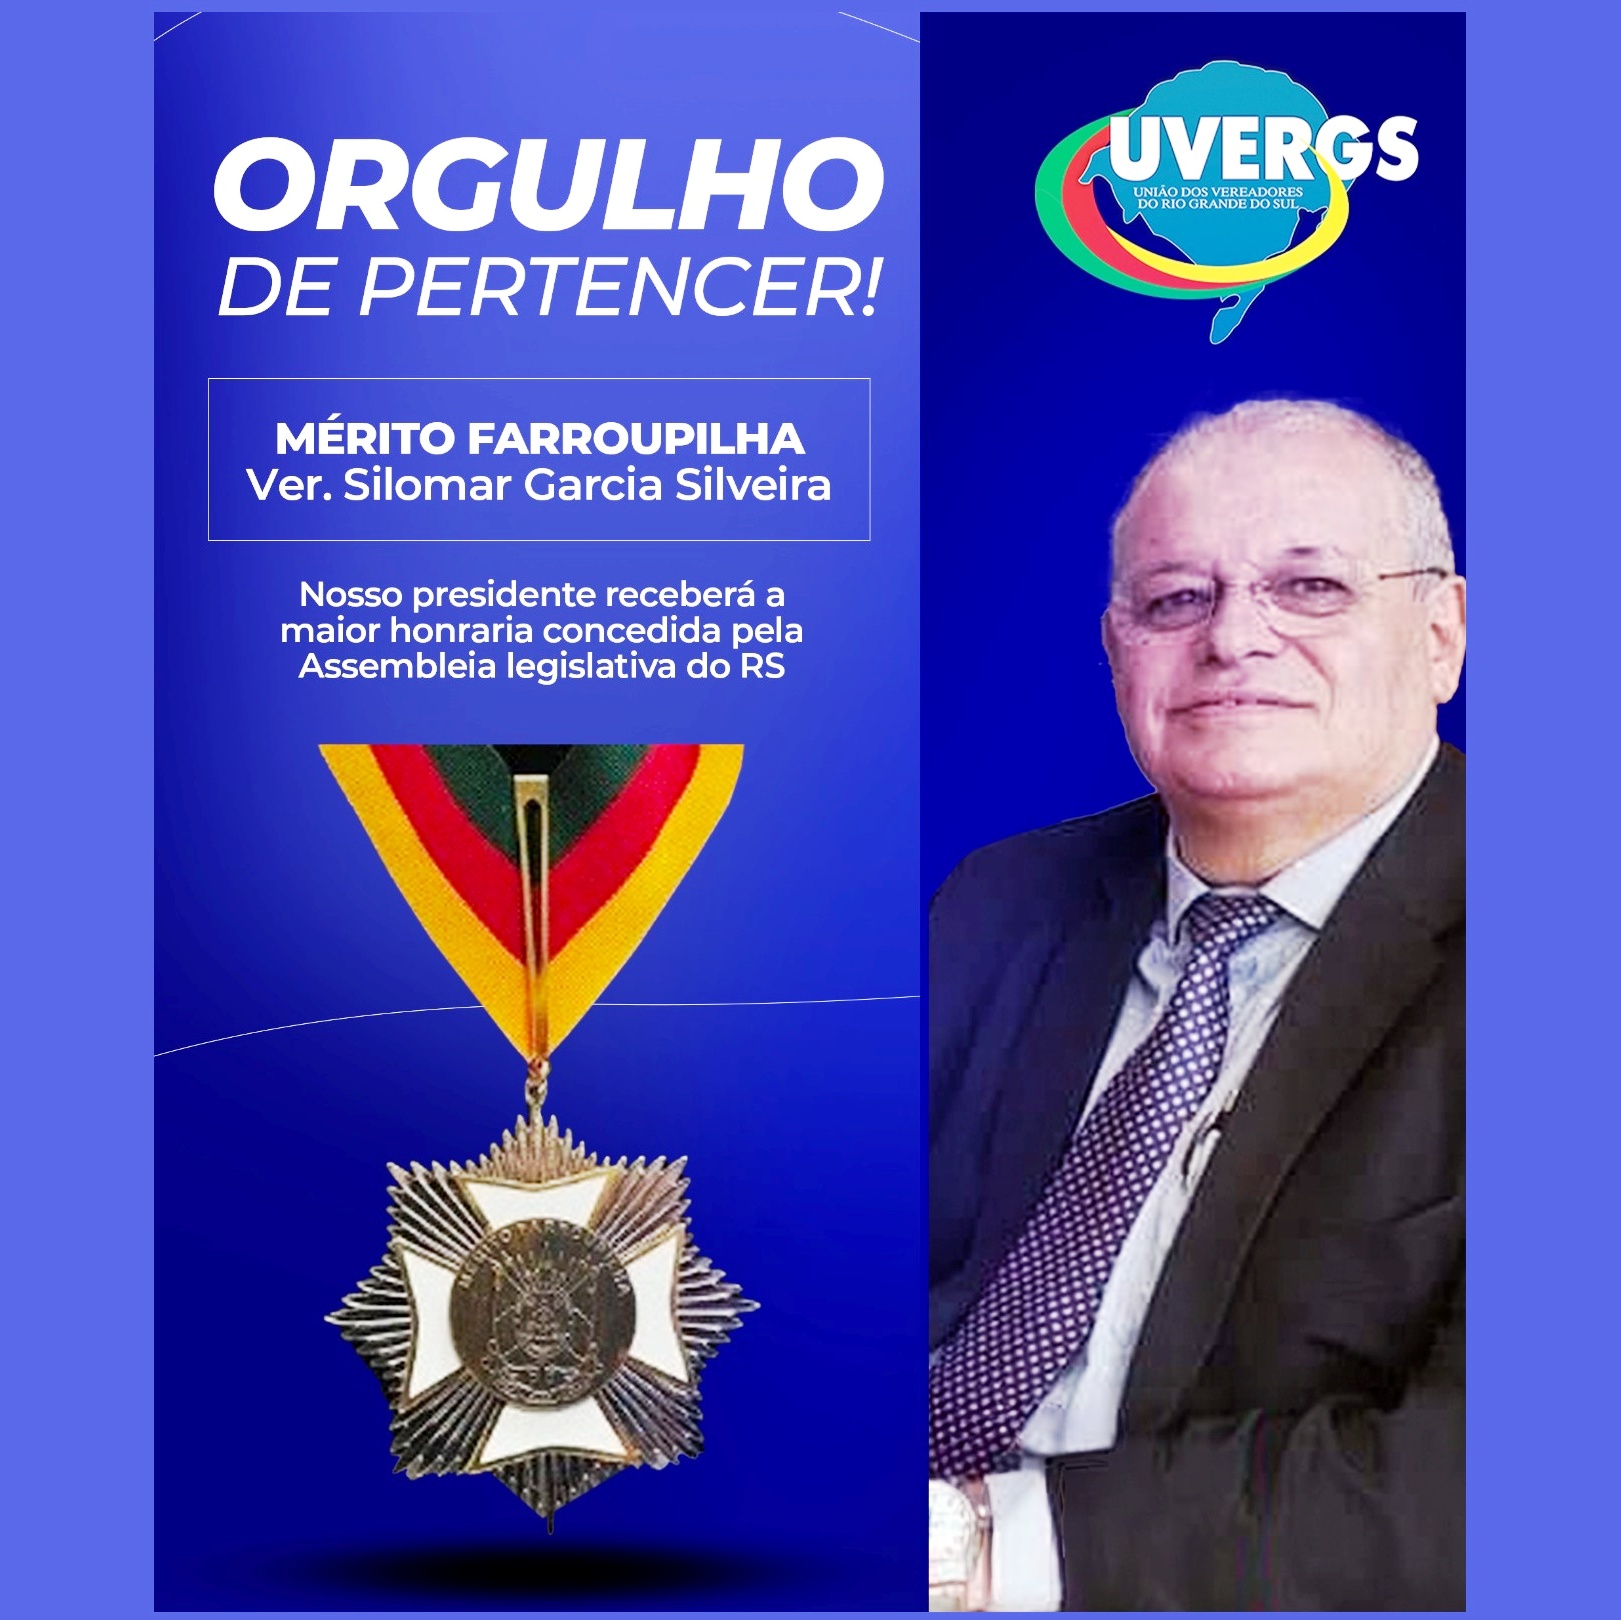 Presidente da UVERGS, Ver. Silomar Garcia Silveira, receberá a Medalha da 56º LEGISLATURA da Assembleia Legislativa do RS.